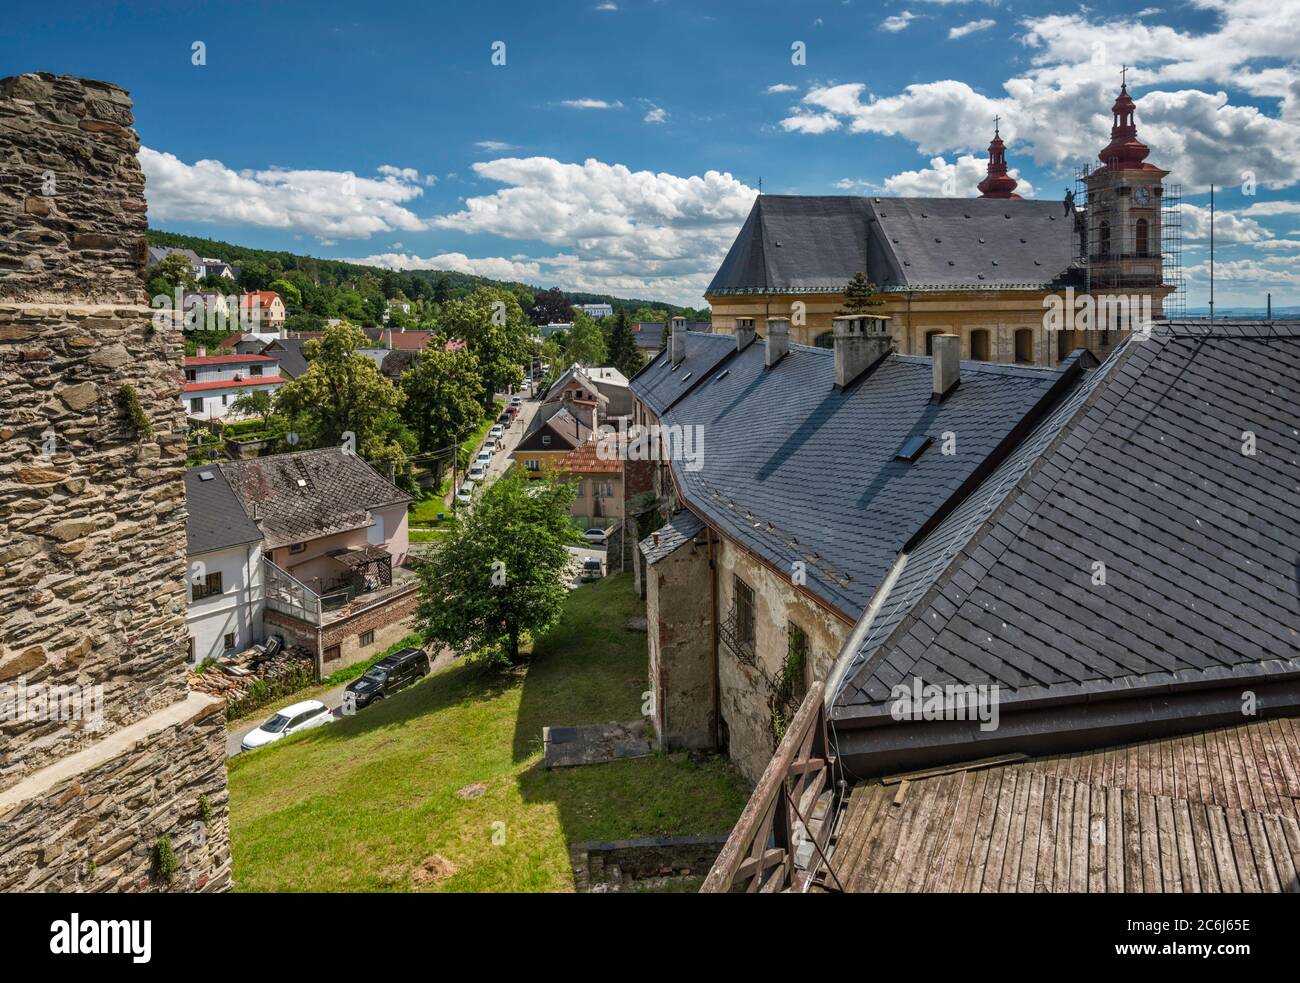 Blick von der Burg, Annunciation Church in der Ferne, in Sternberk, Mähren, Olomouc Region, Tschechische Republik Stockfoto